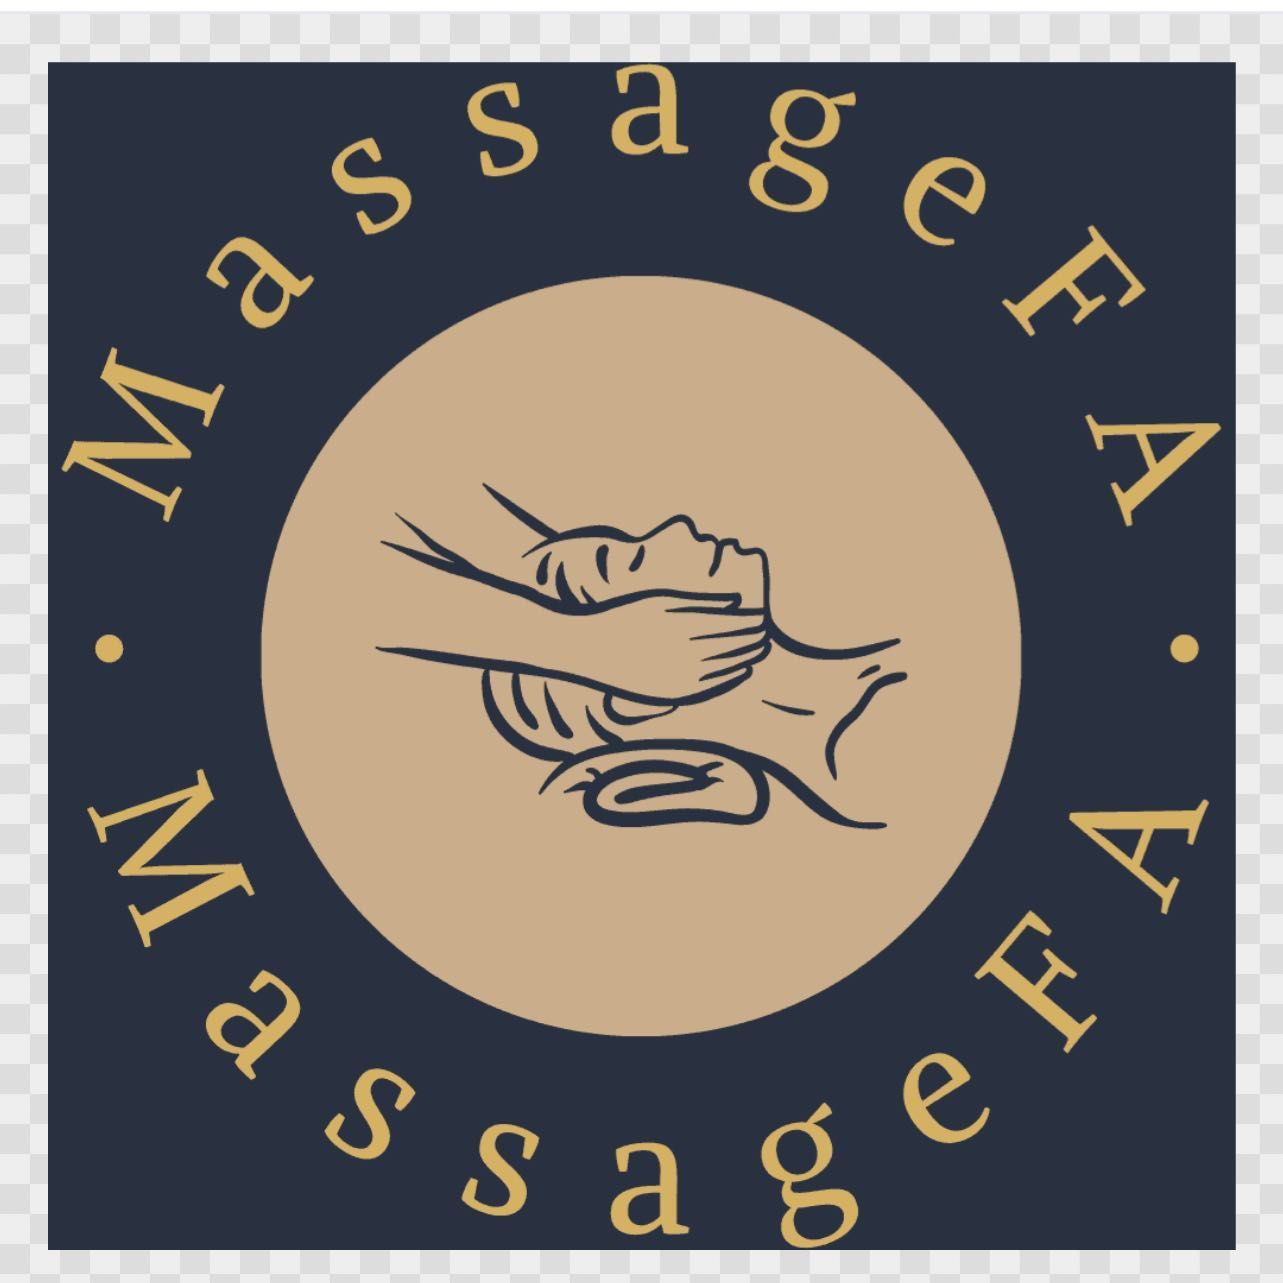 MassageForAll, Waltham, 02453